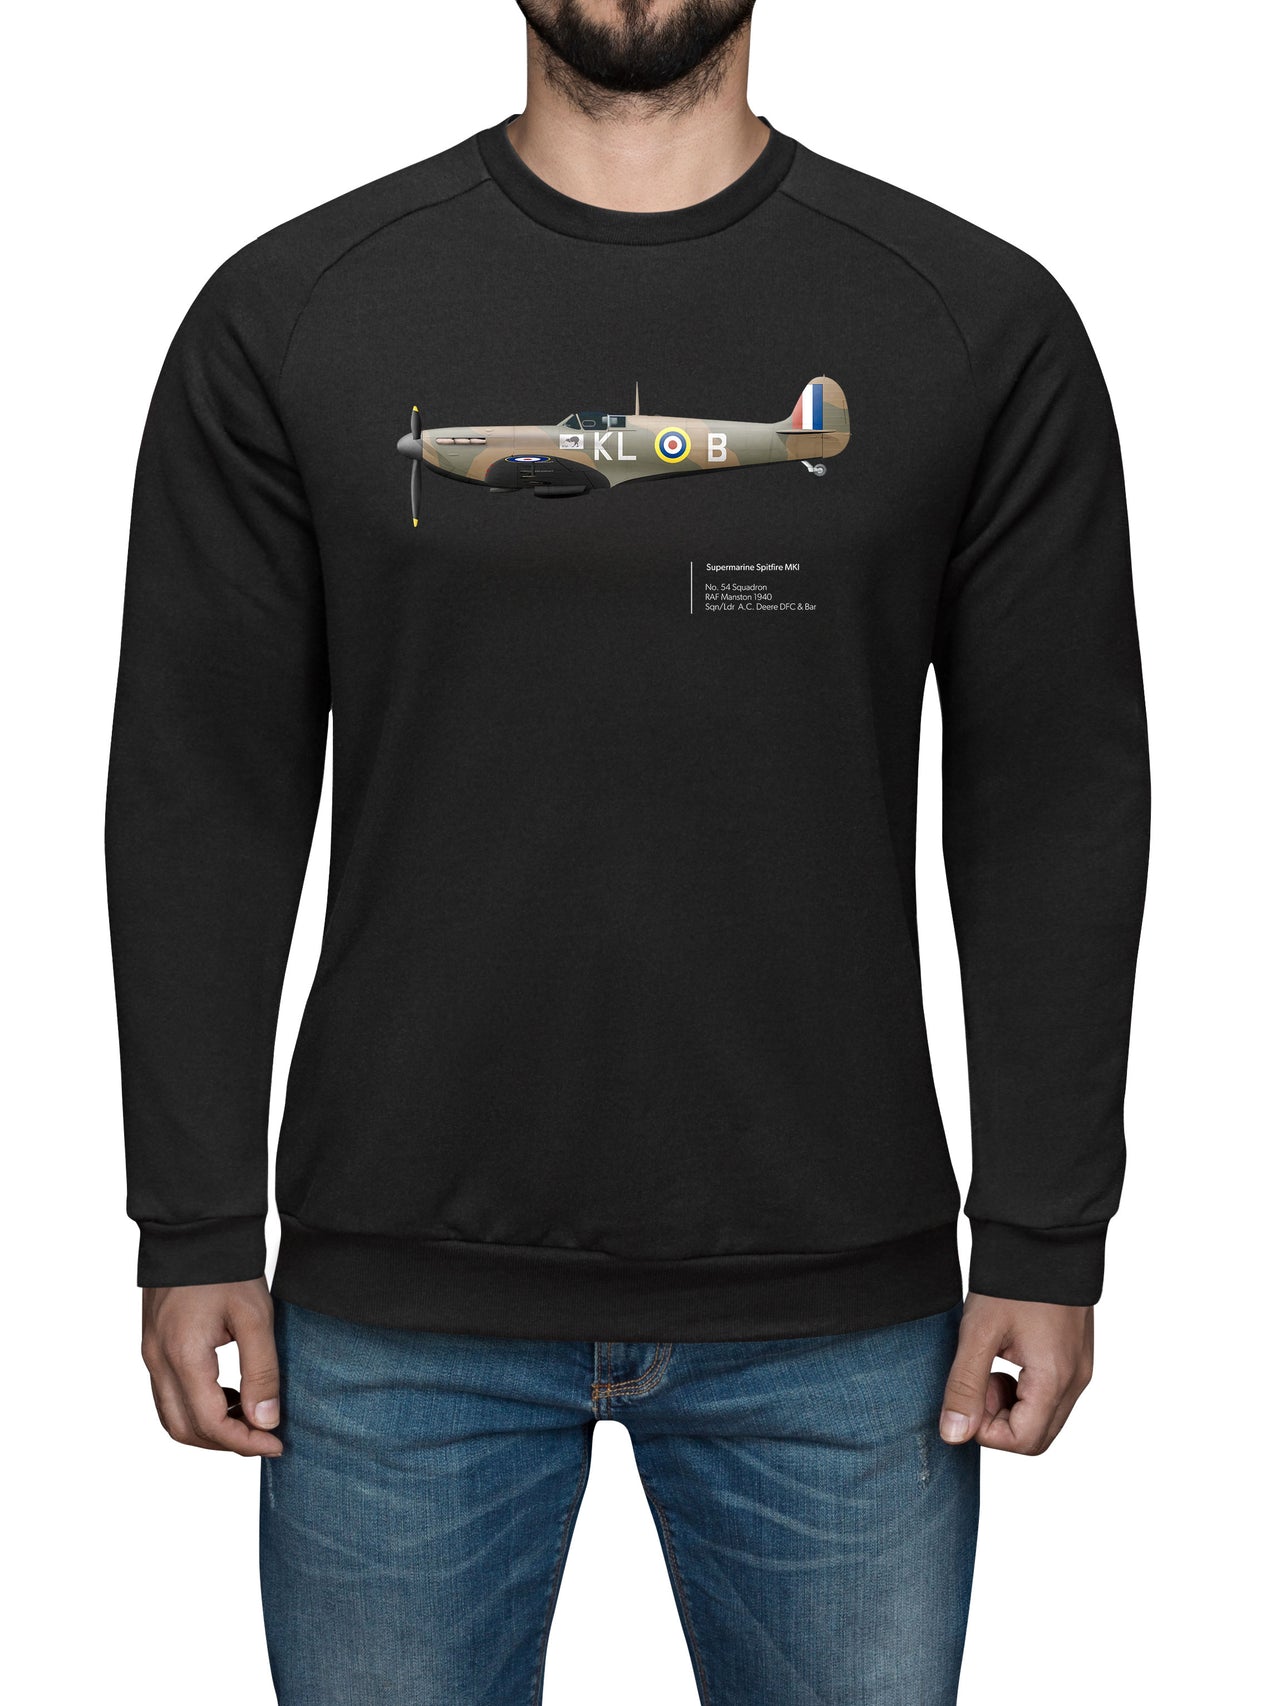 Spitfire 54SQN - Sweat Shirt